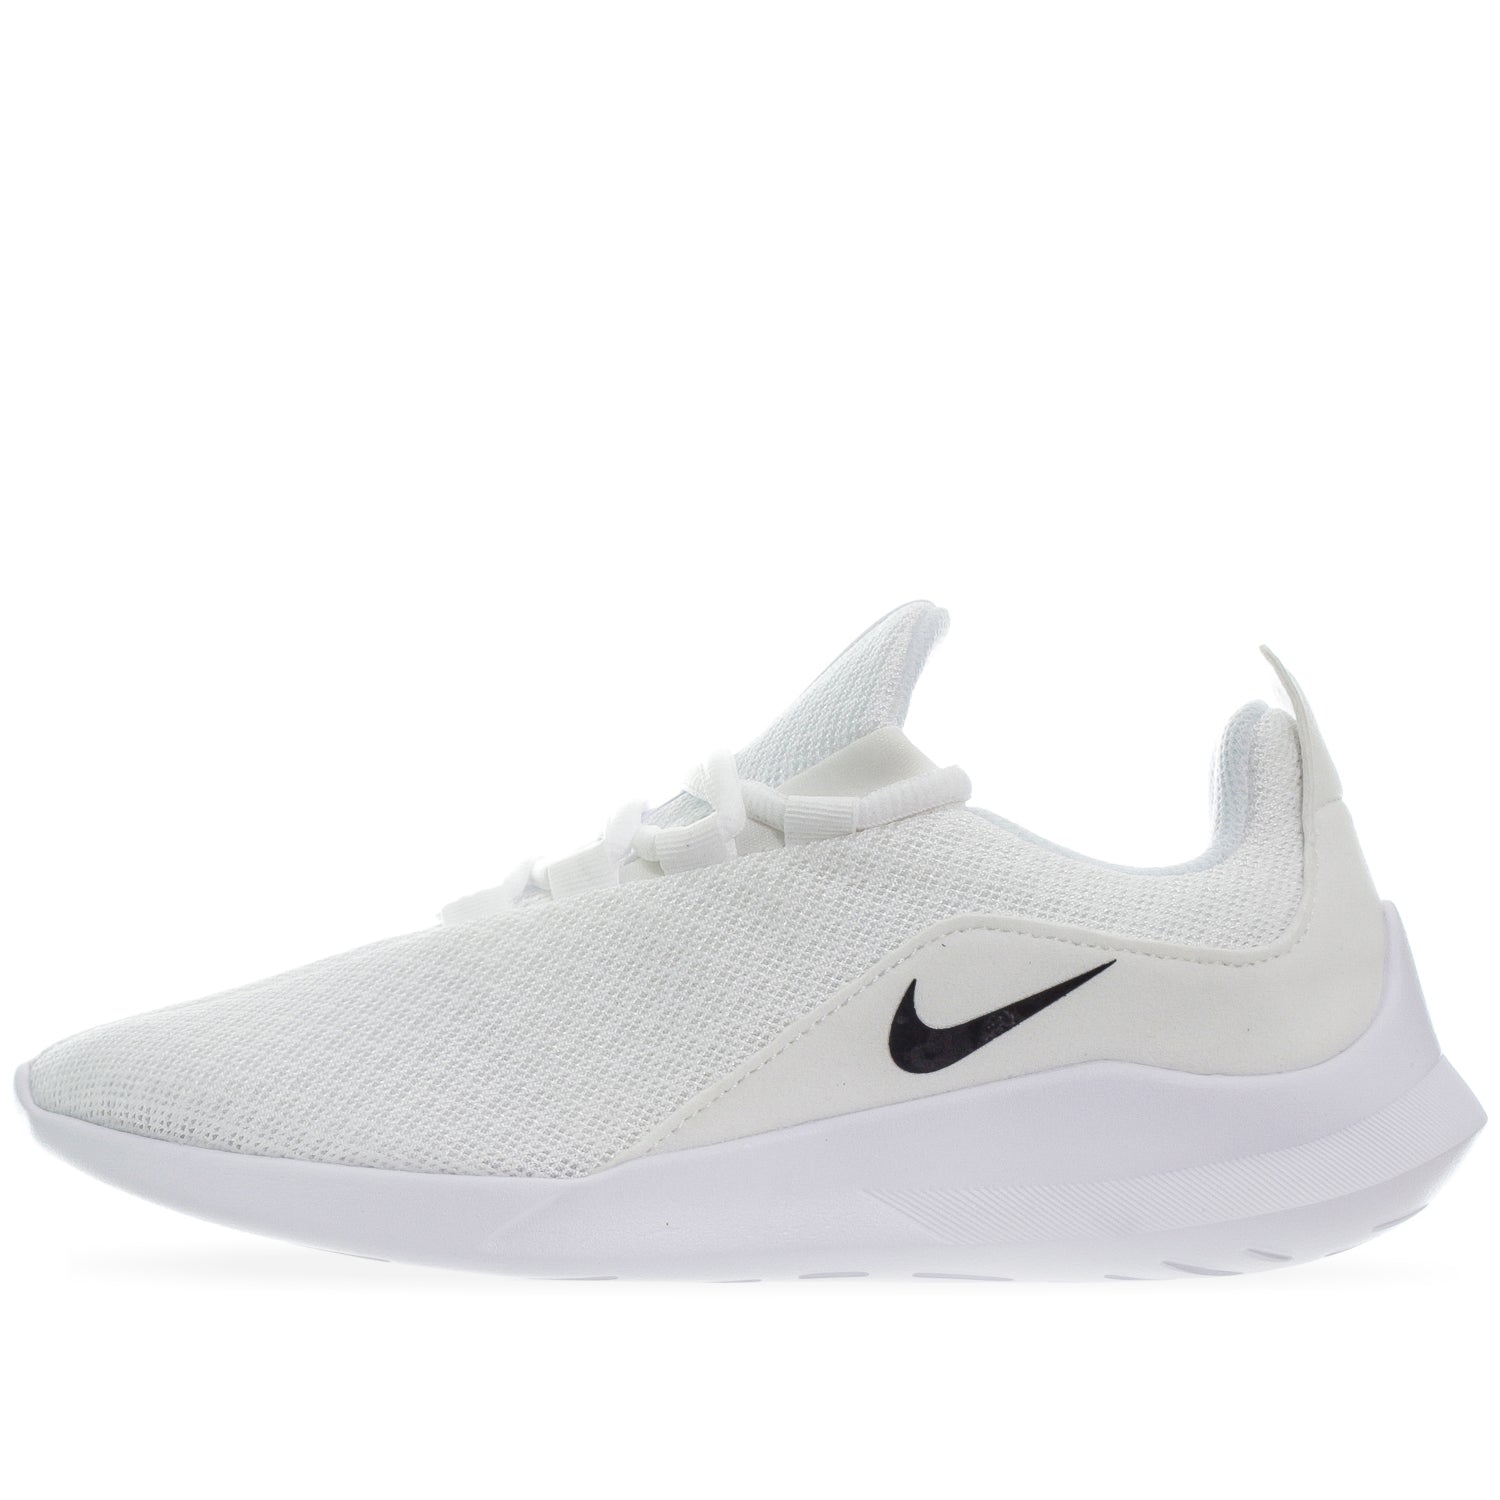 Tenis Nike - AA2185100 - Blanco - Mujer | Shoelander.com - Footwear Retail